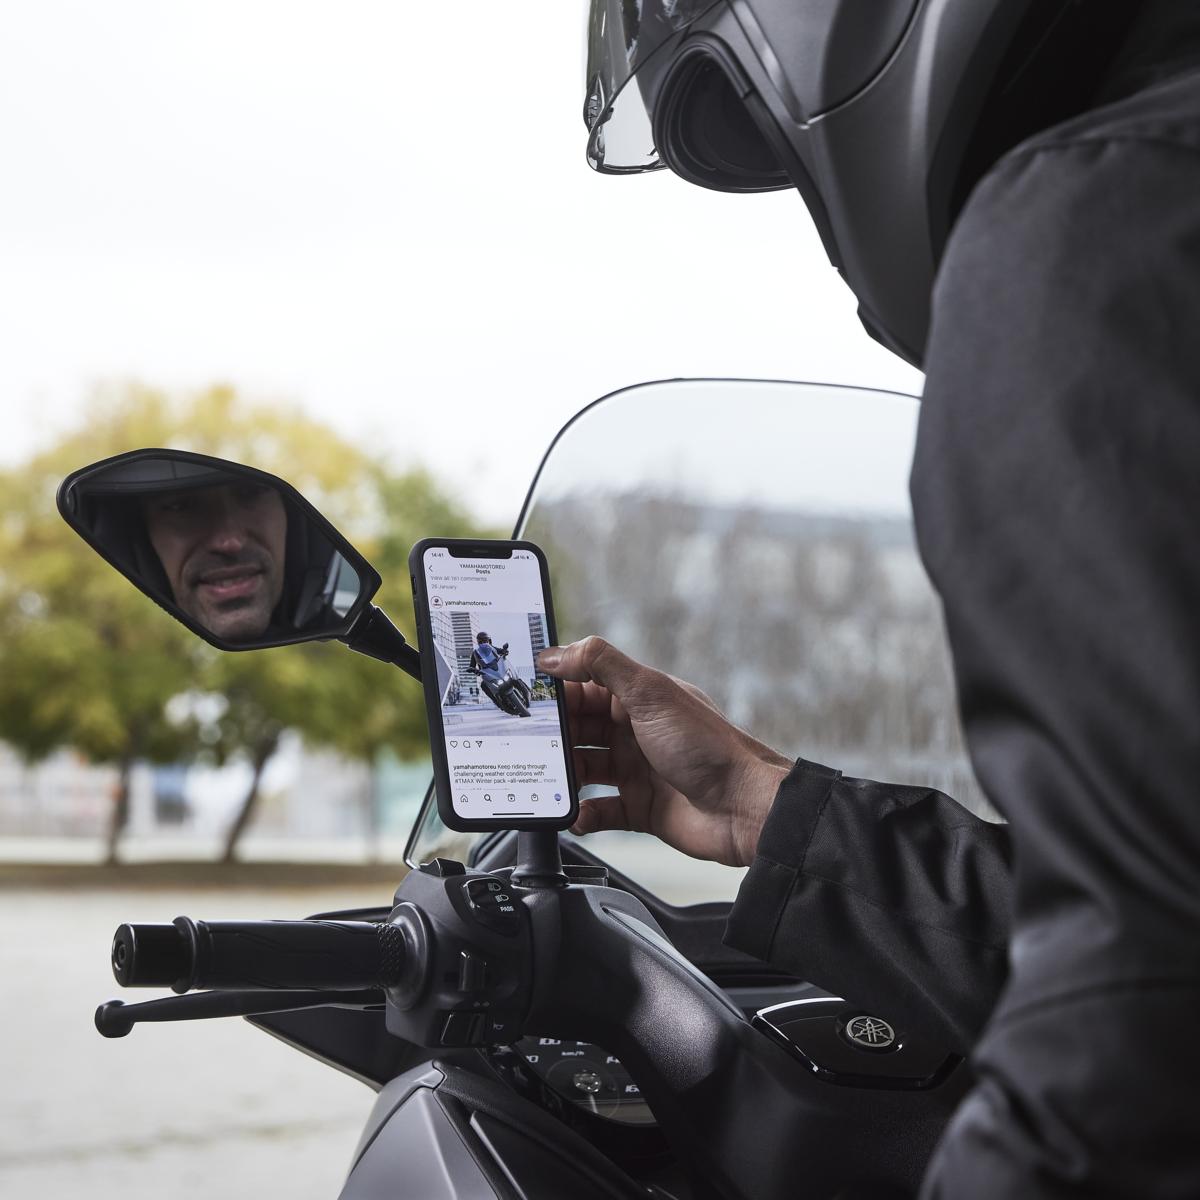 Proizvod Mirror Mount omogućuje vam postavljanje pametnog telefona na držač retrovizora vašeg skutera ili motocikla za nekoliko sekundi.​